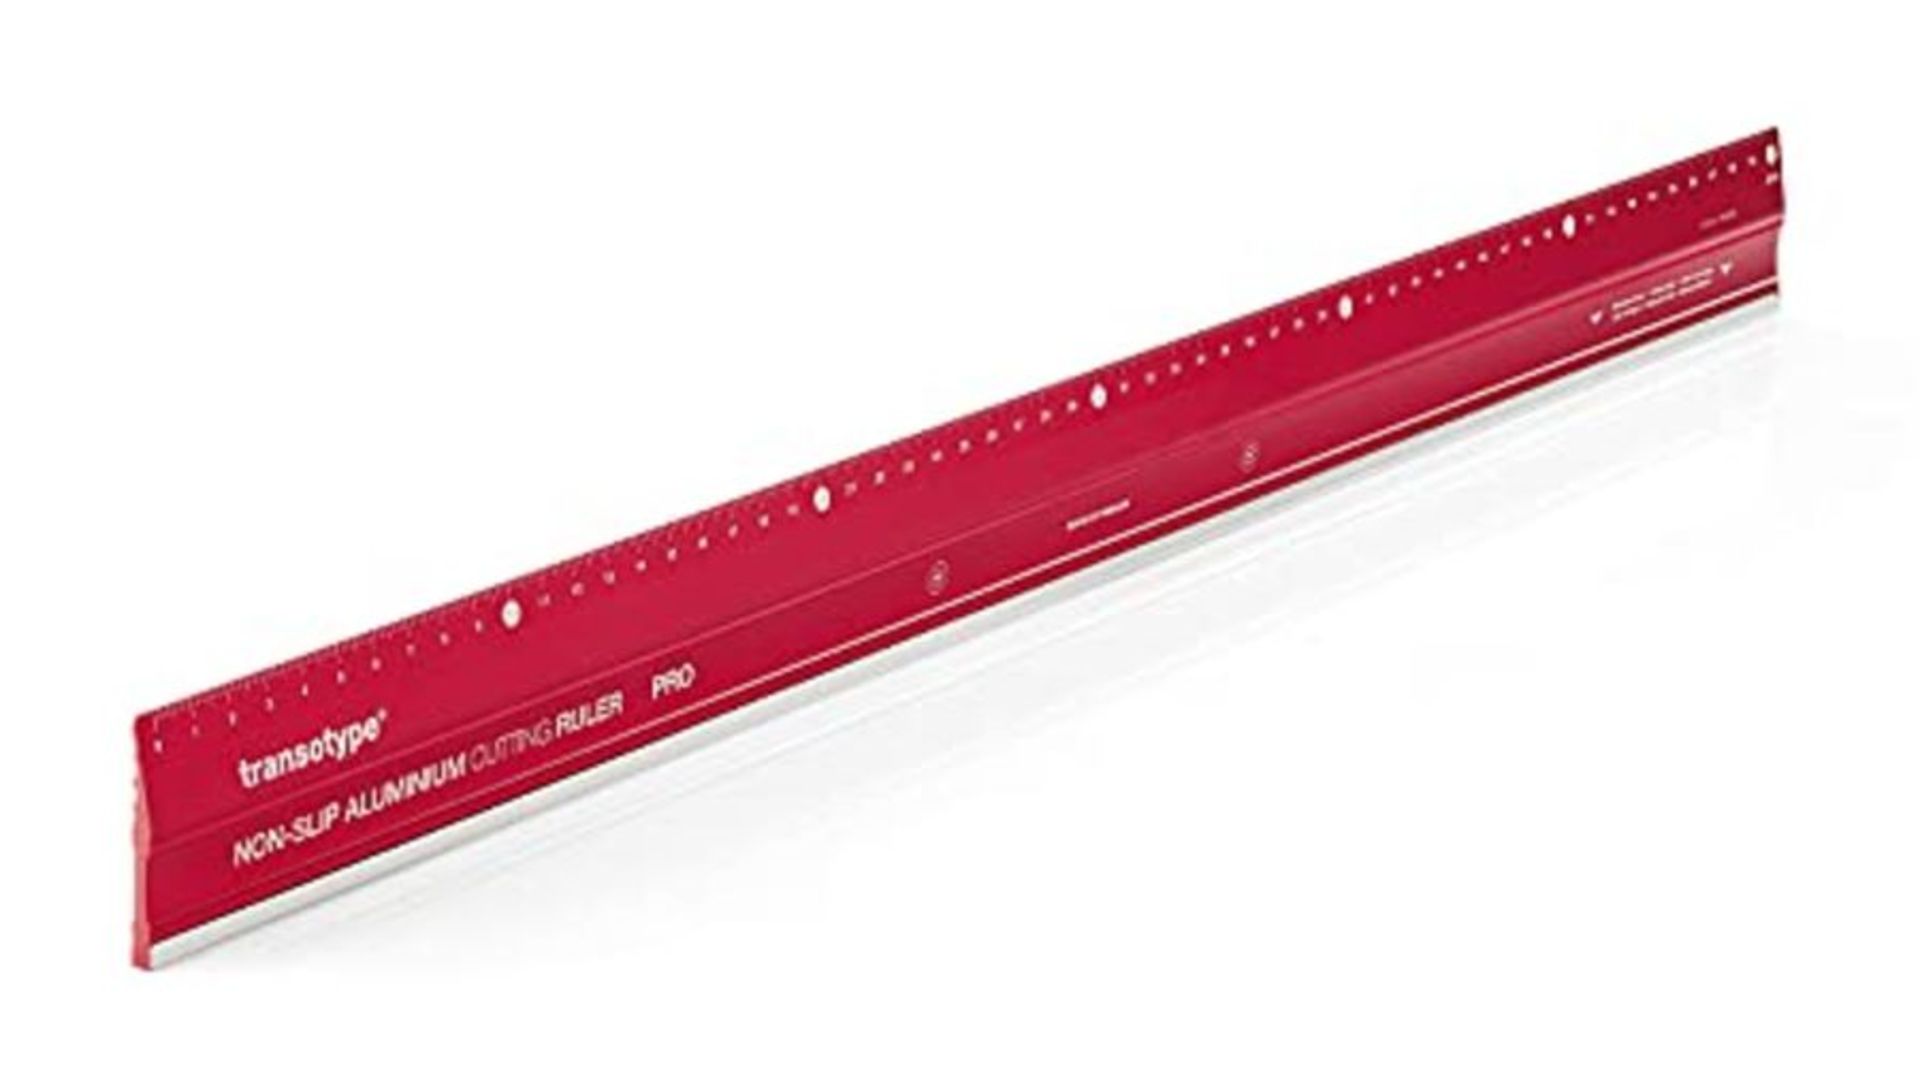 Transotype Pro 17806006 Aluminium Cutting Ruler 60 cm Red